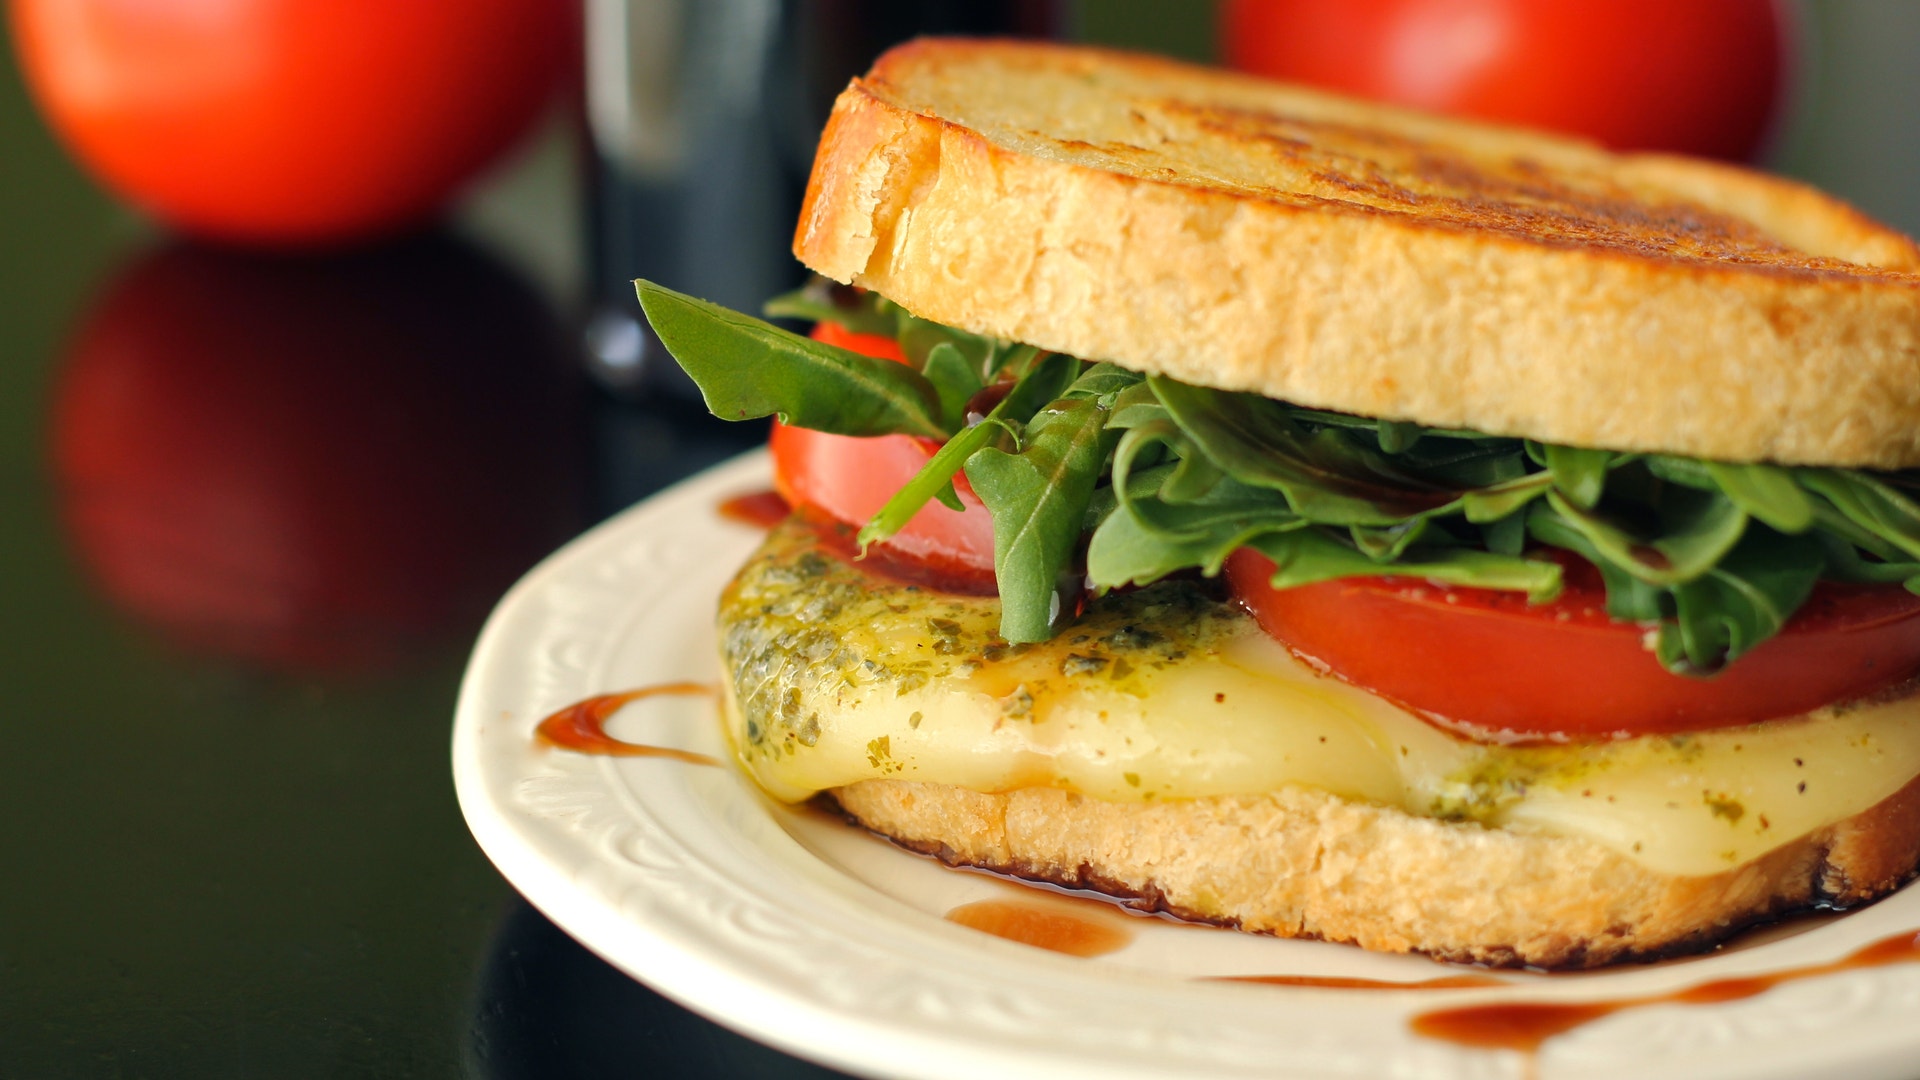 Круглый сэндвич. Панини итальянский сэндвич. Сэндвич круглый. Овальный сэндвич. Гриль для круглых сэндвичей.